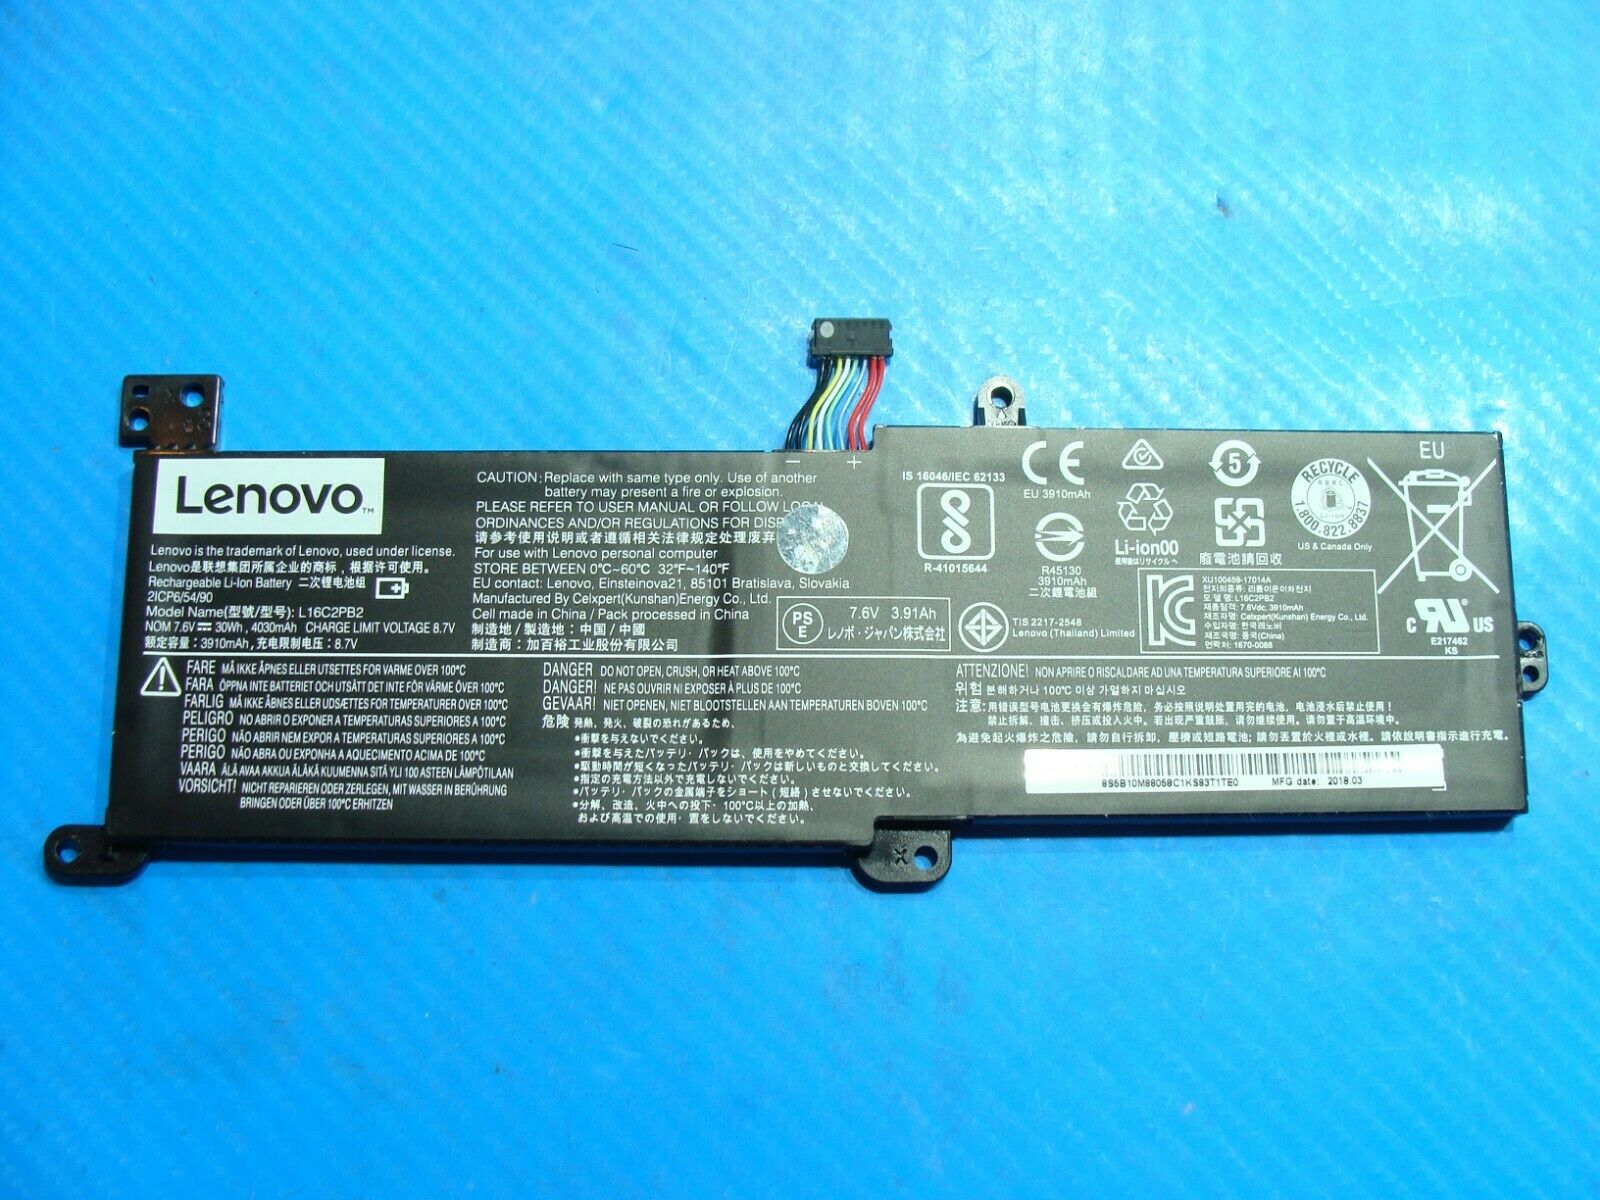 Lenovo IdeaPad 330 15.6